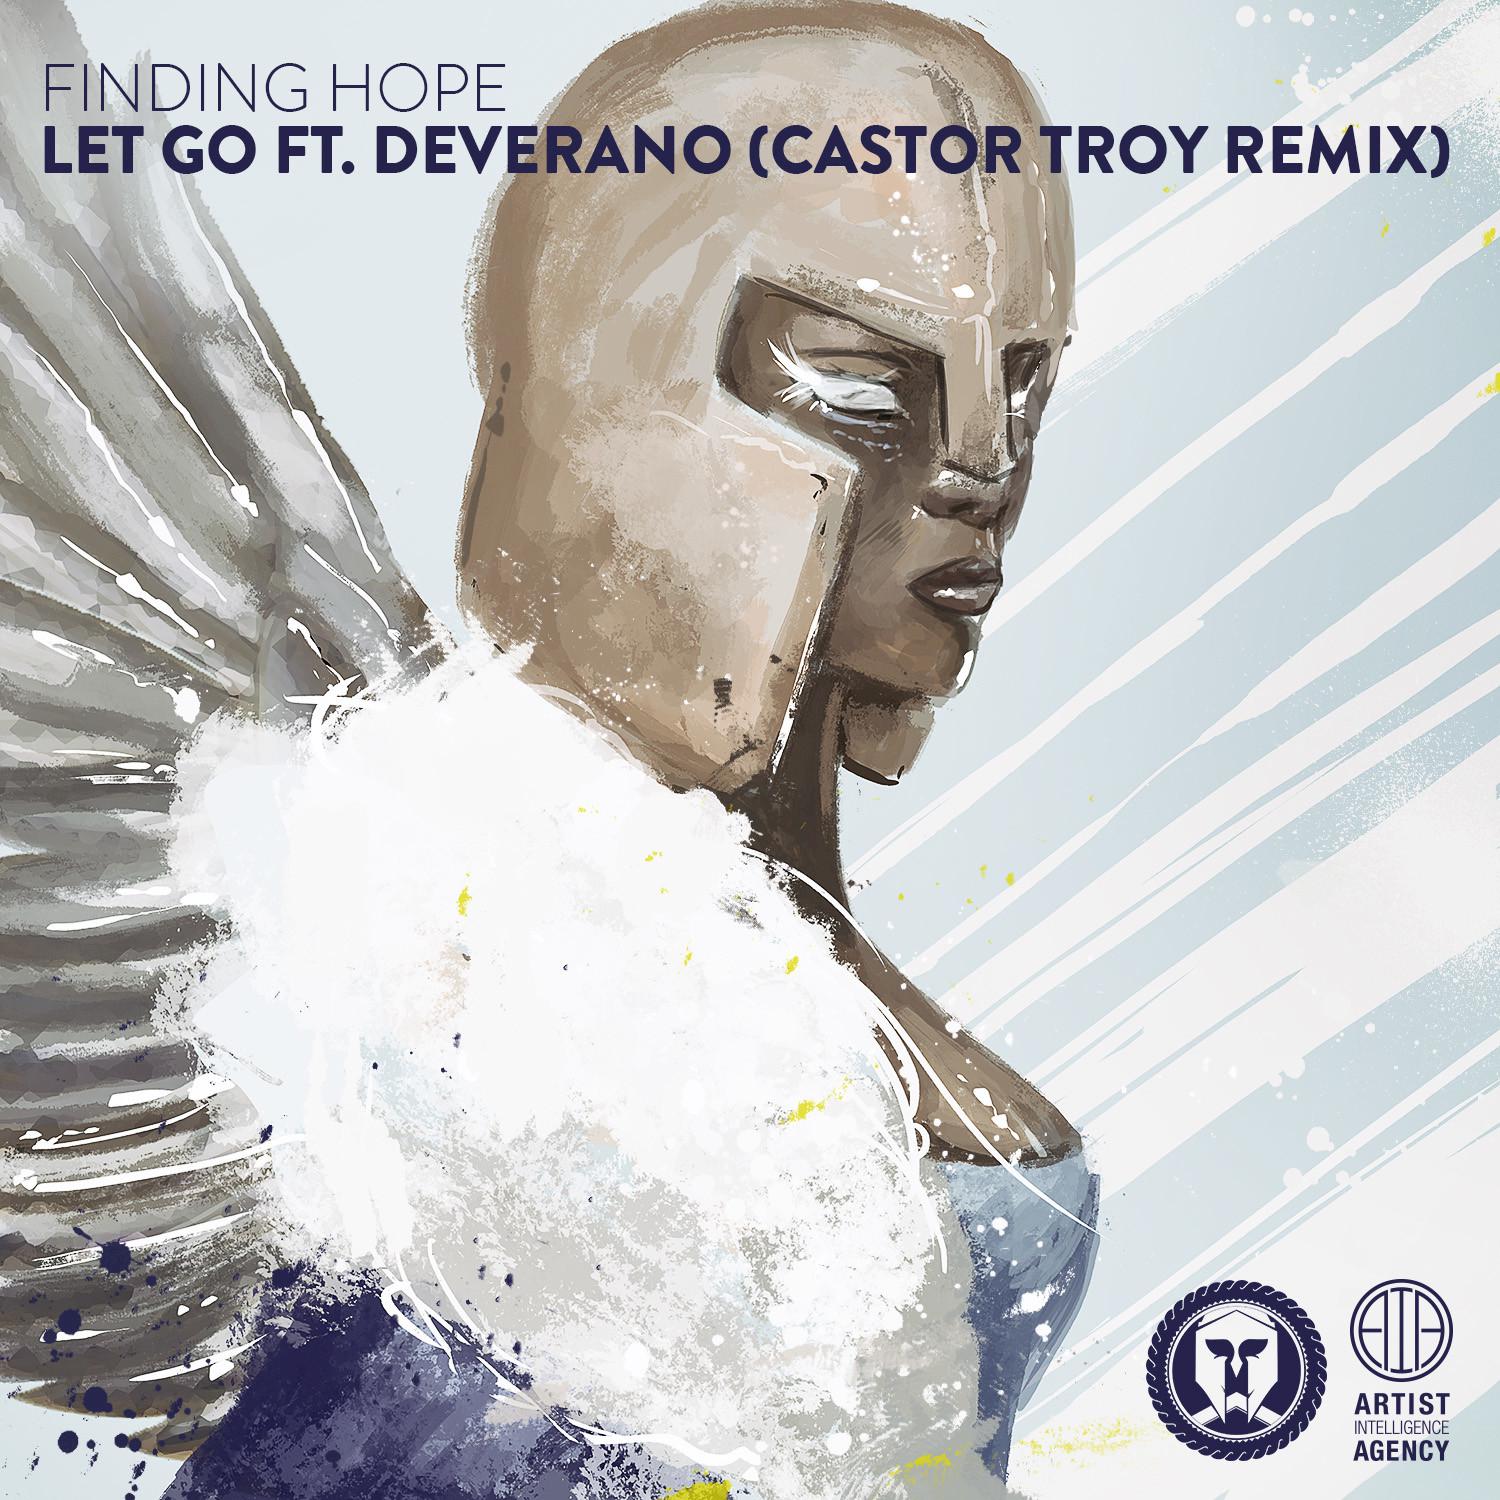 Finding Hope - Let Go (Castor Troy Remix)